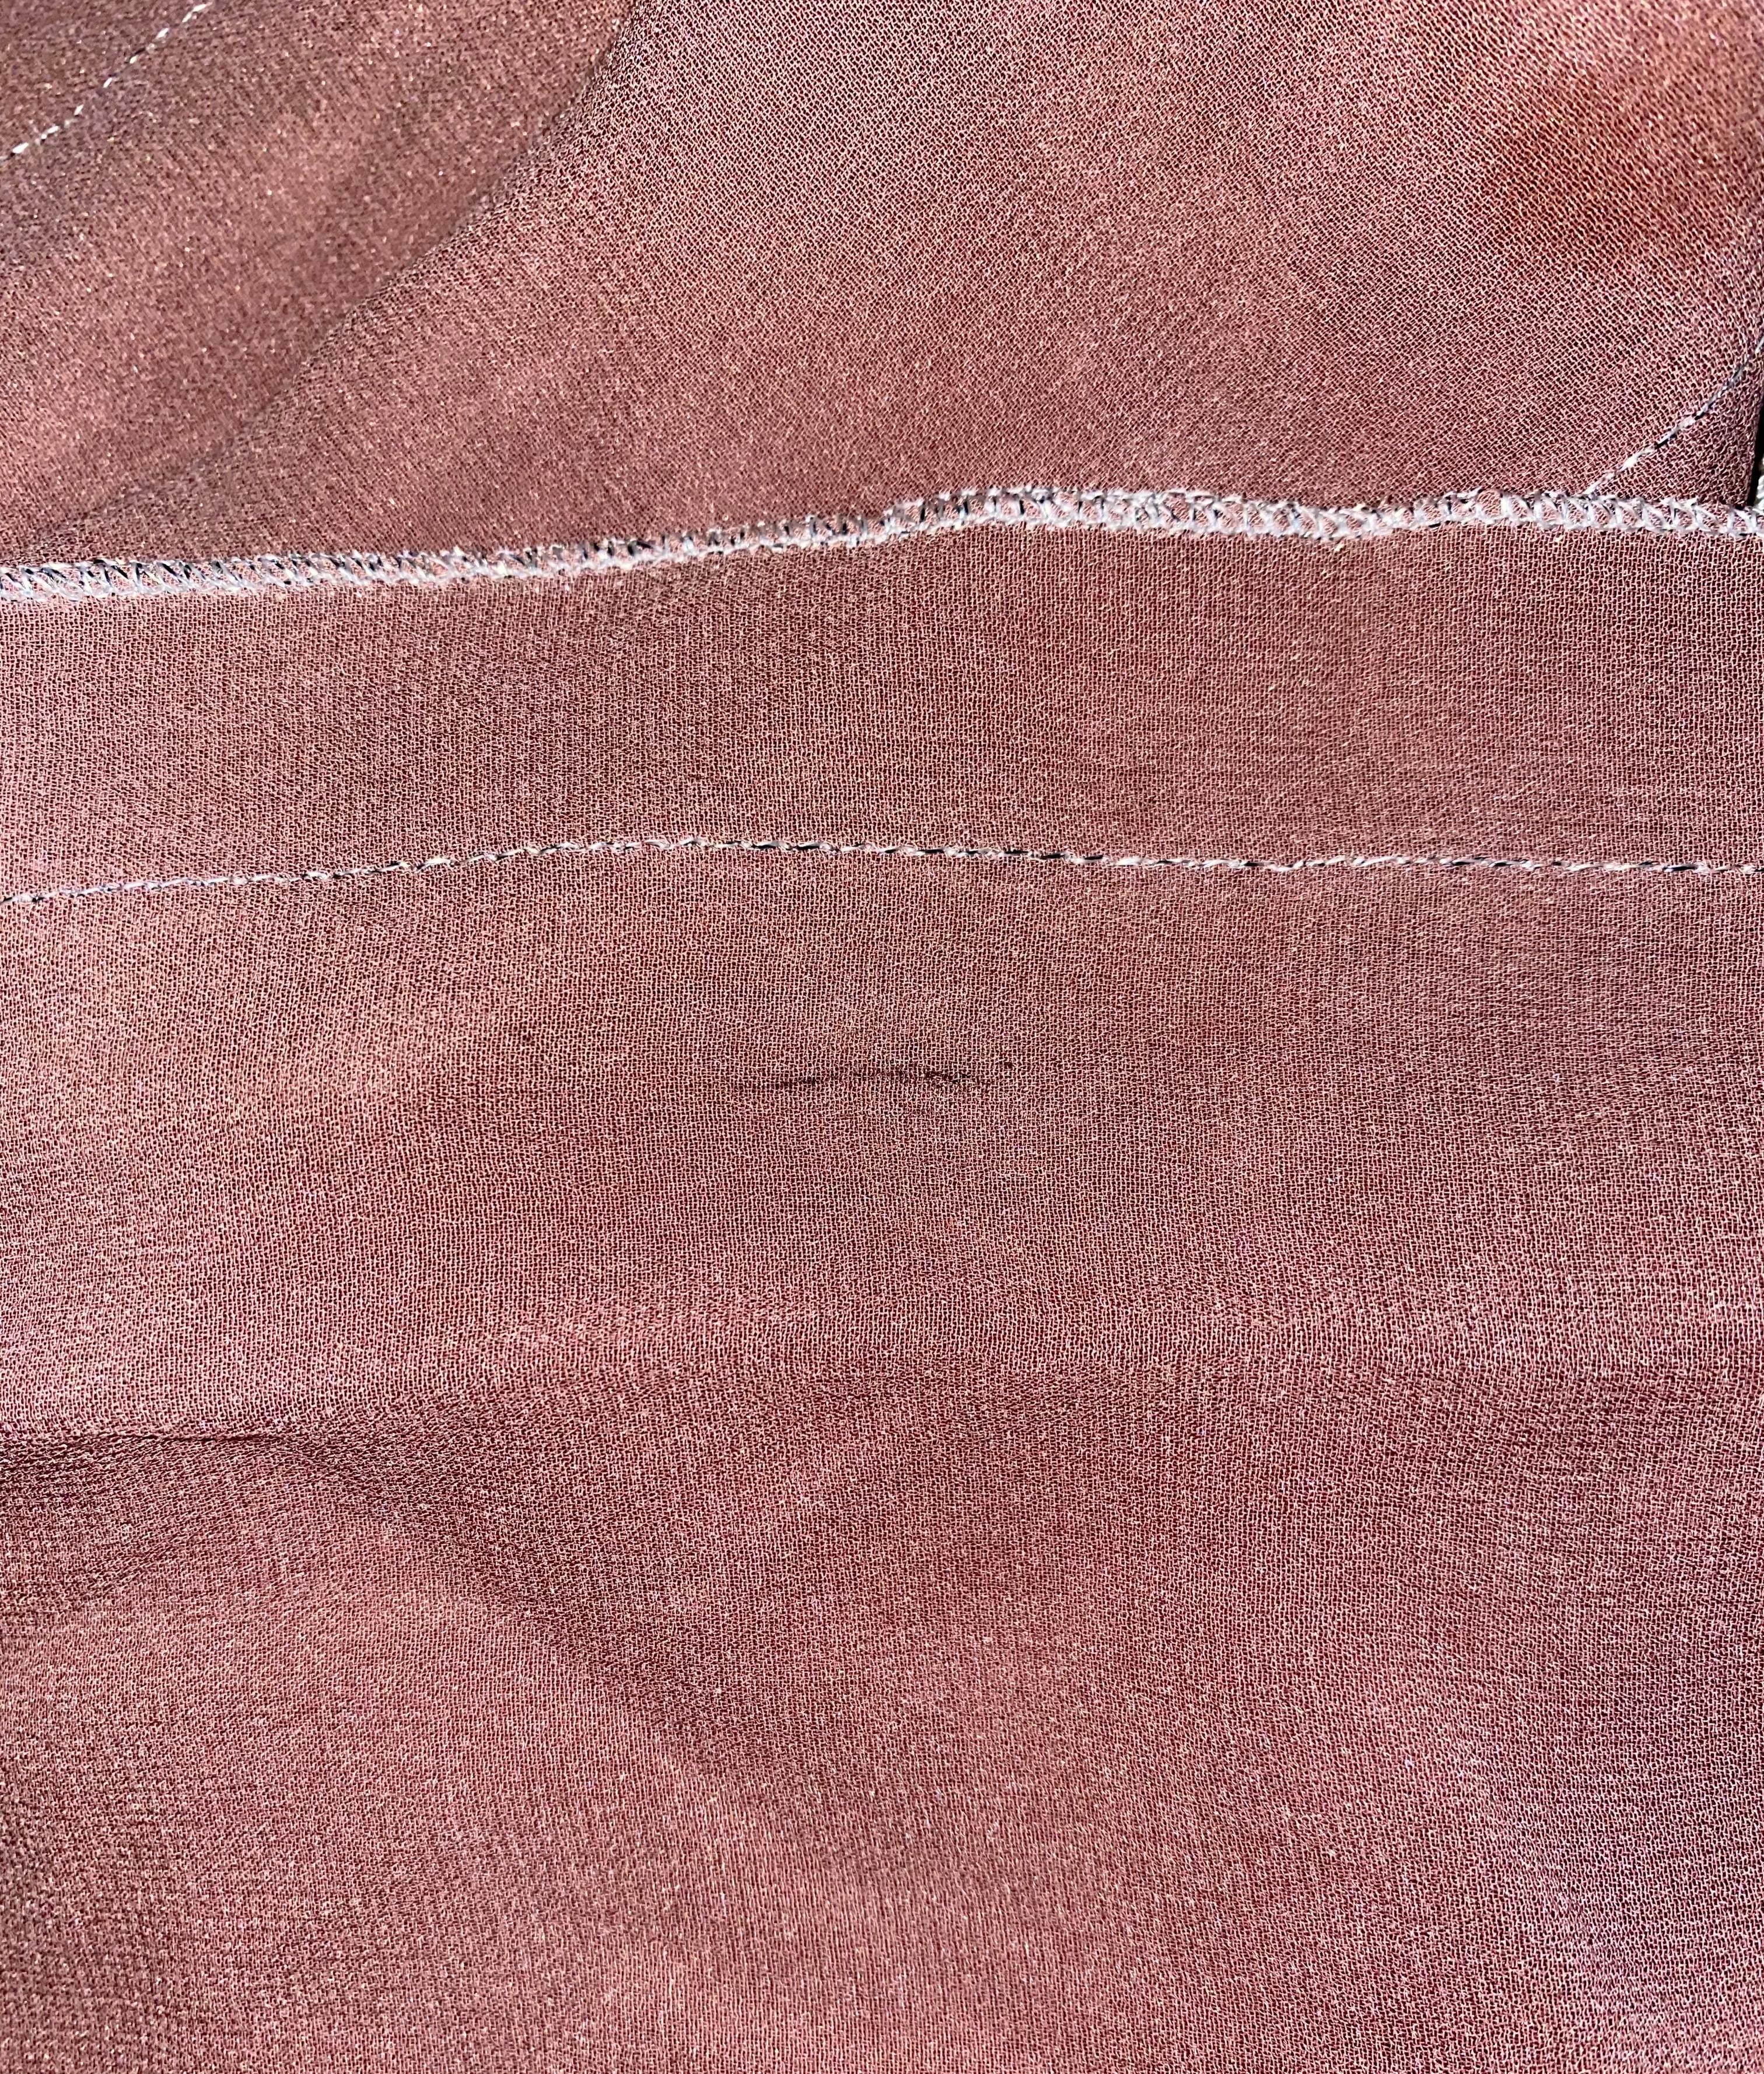 Brown UNWORN Missoni Metallic Lurex Knit Belted Kaftan Mini Dress Cover Up